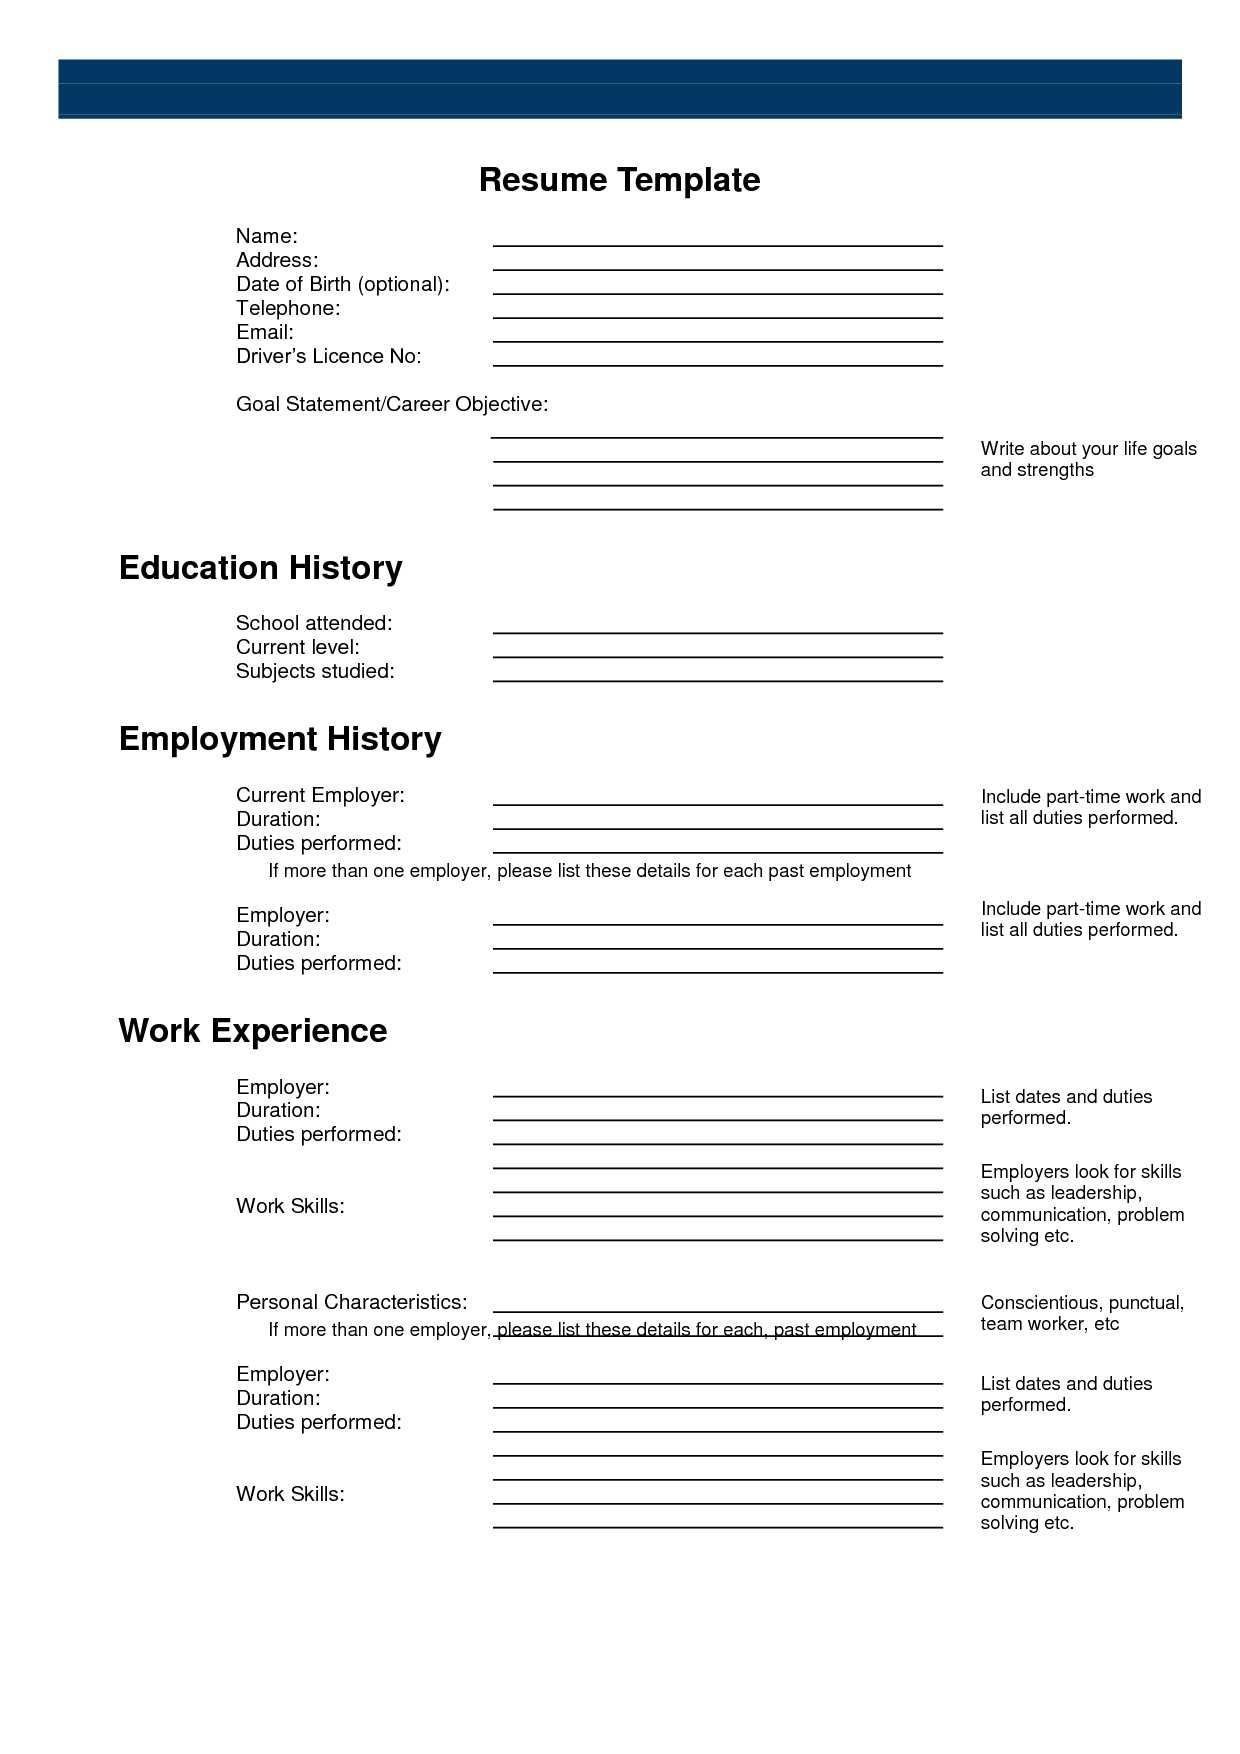 Pinanishfeds On Resumes | Free Printable Resume, Free Printable - Free Printable Resume Builder